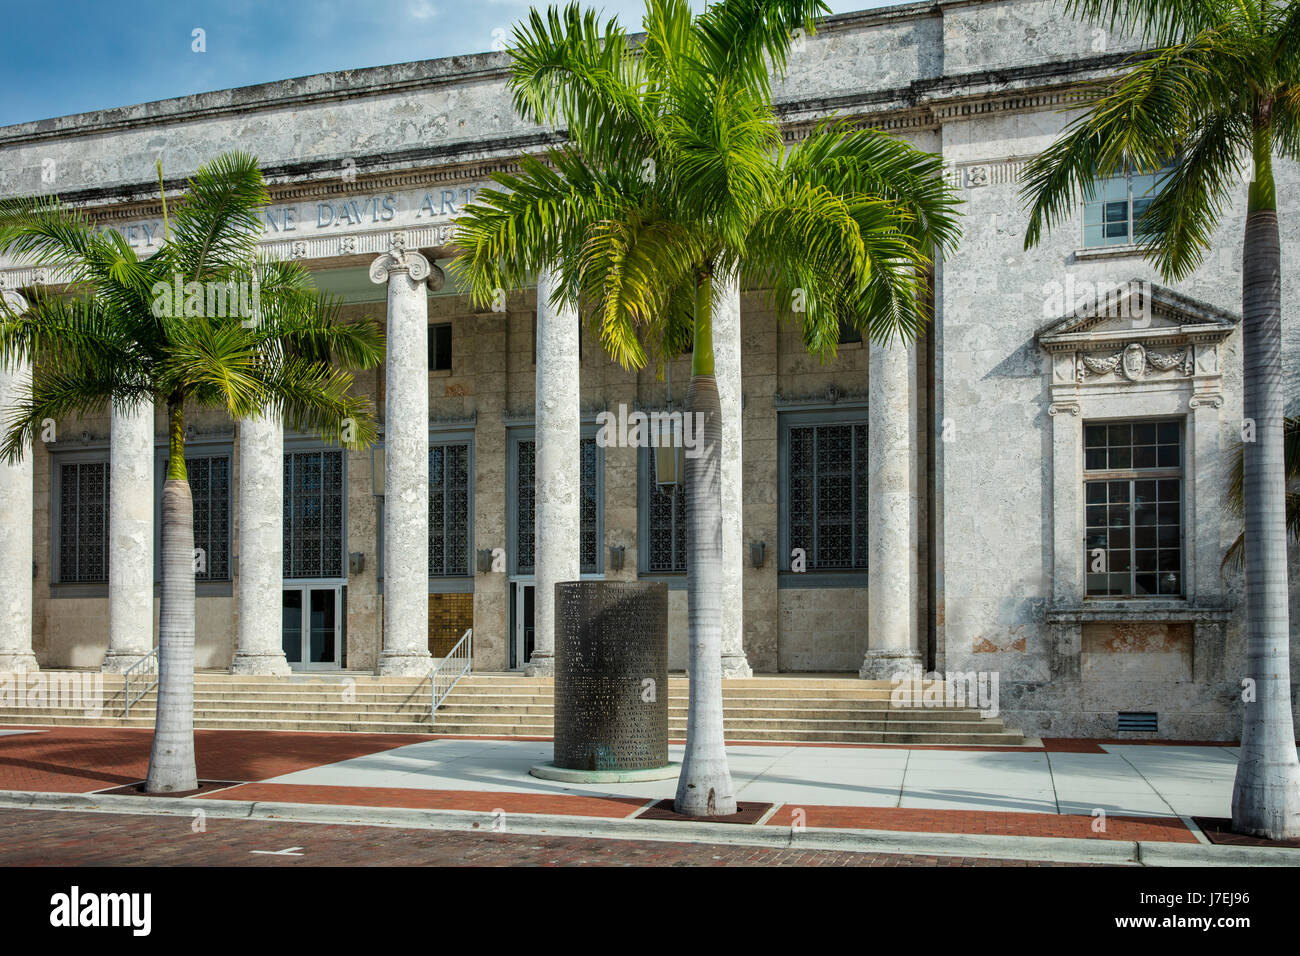 Sidney & Davis Art Center de Berne sur l'historique Première Street, Fort Myers, Floride, USA Banque D'Images